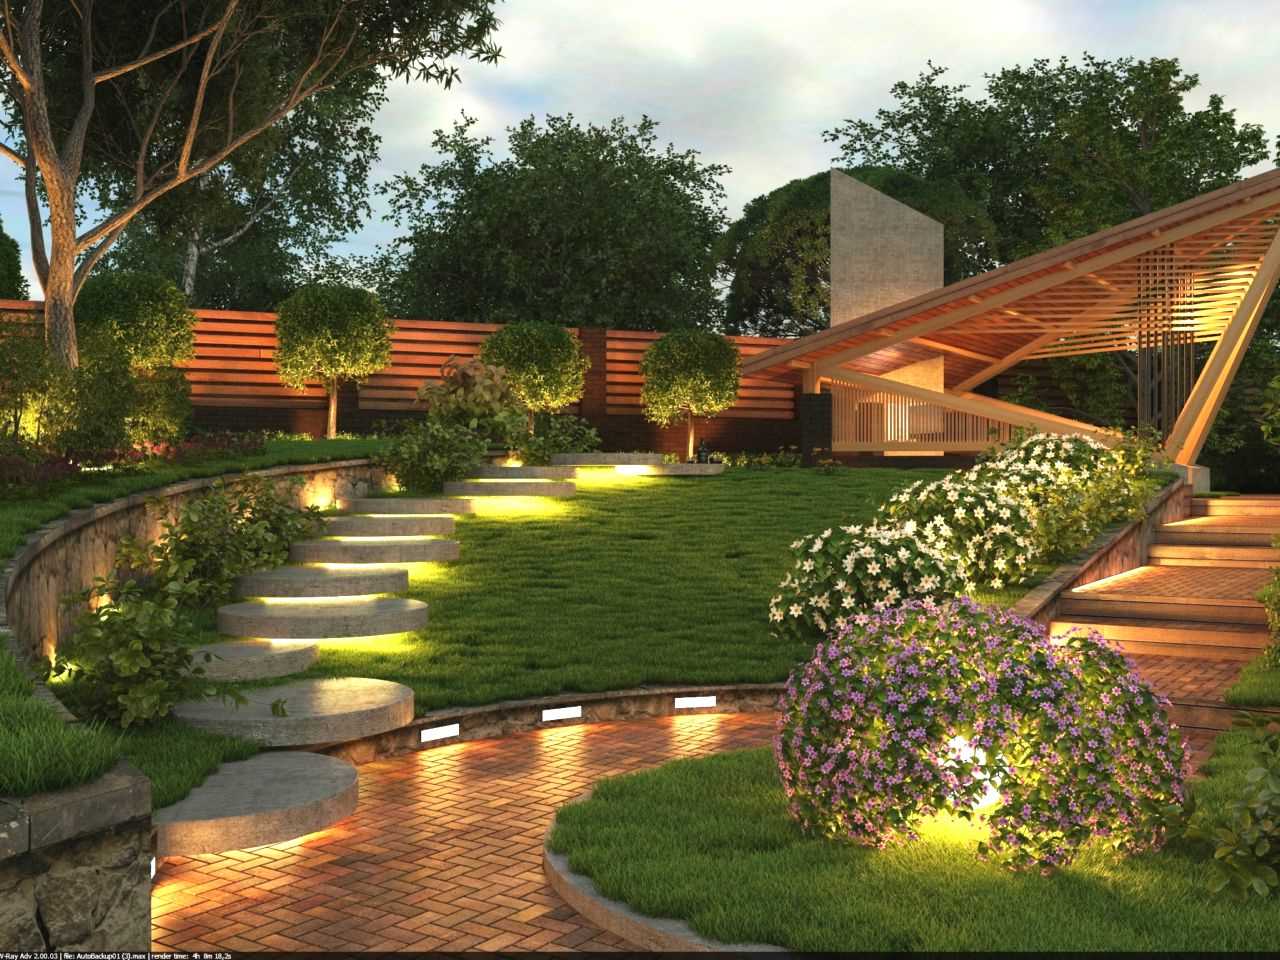 myšlenka využití neobvyklých rostlin v krajinném designu domu